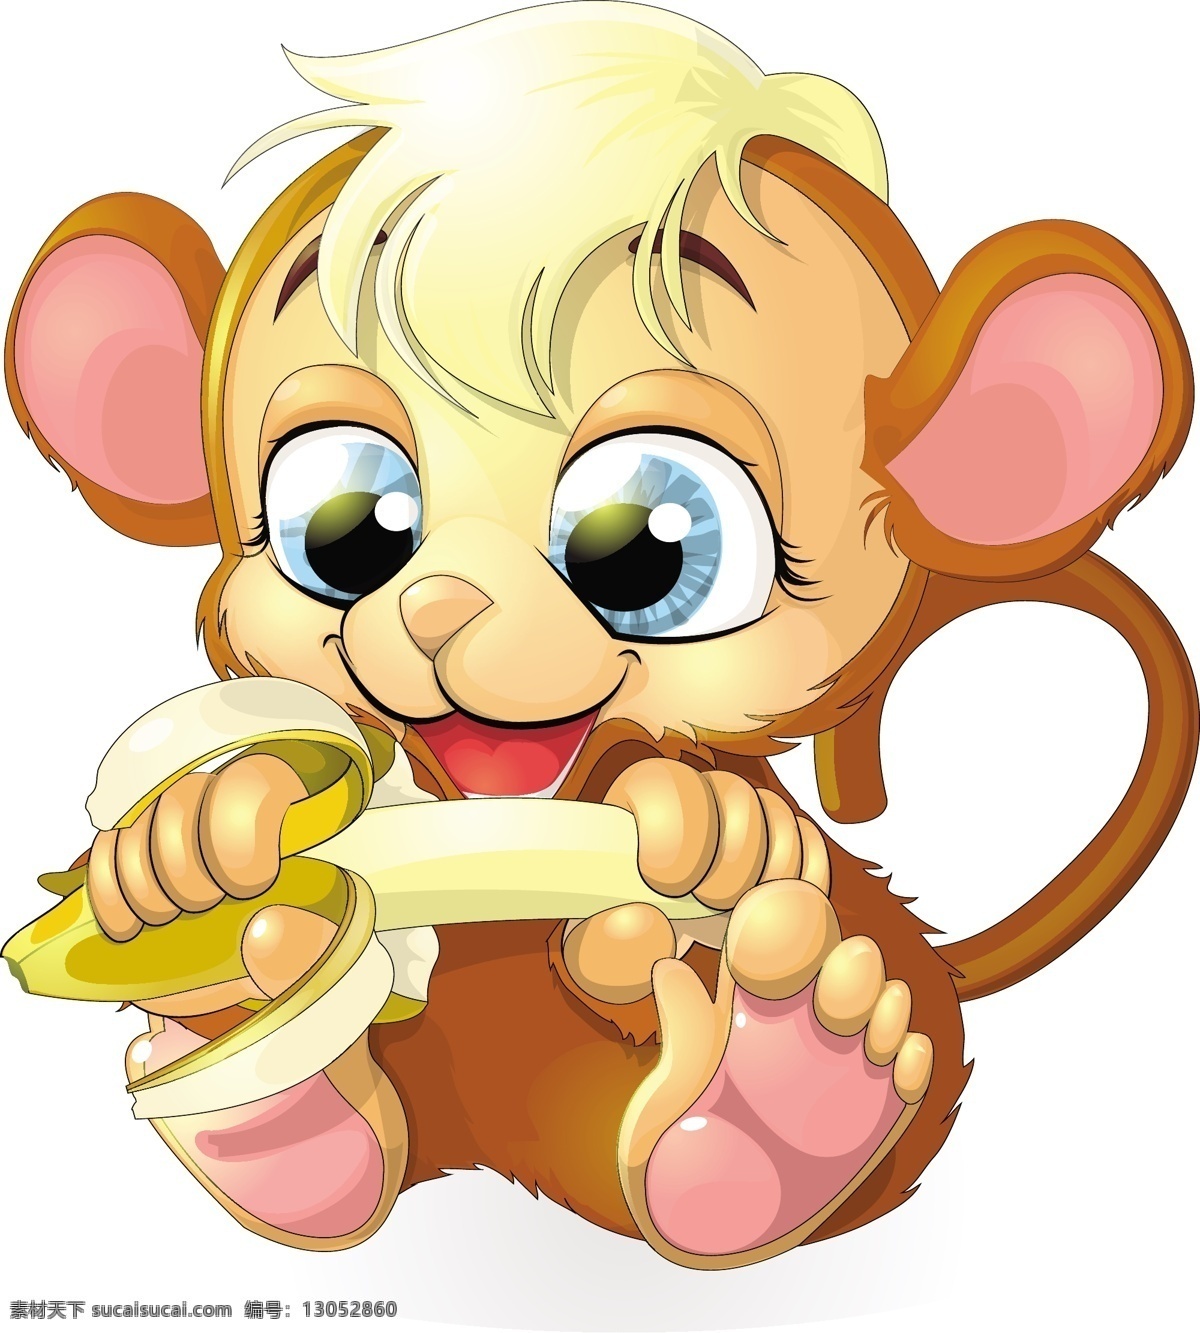 吃 香蕉 小 猴子 矢量图 矢量下载 卡通动物 卡通插图 矢量卡通形象 卡通猴子 可爱动物 白色